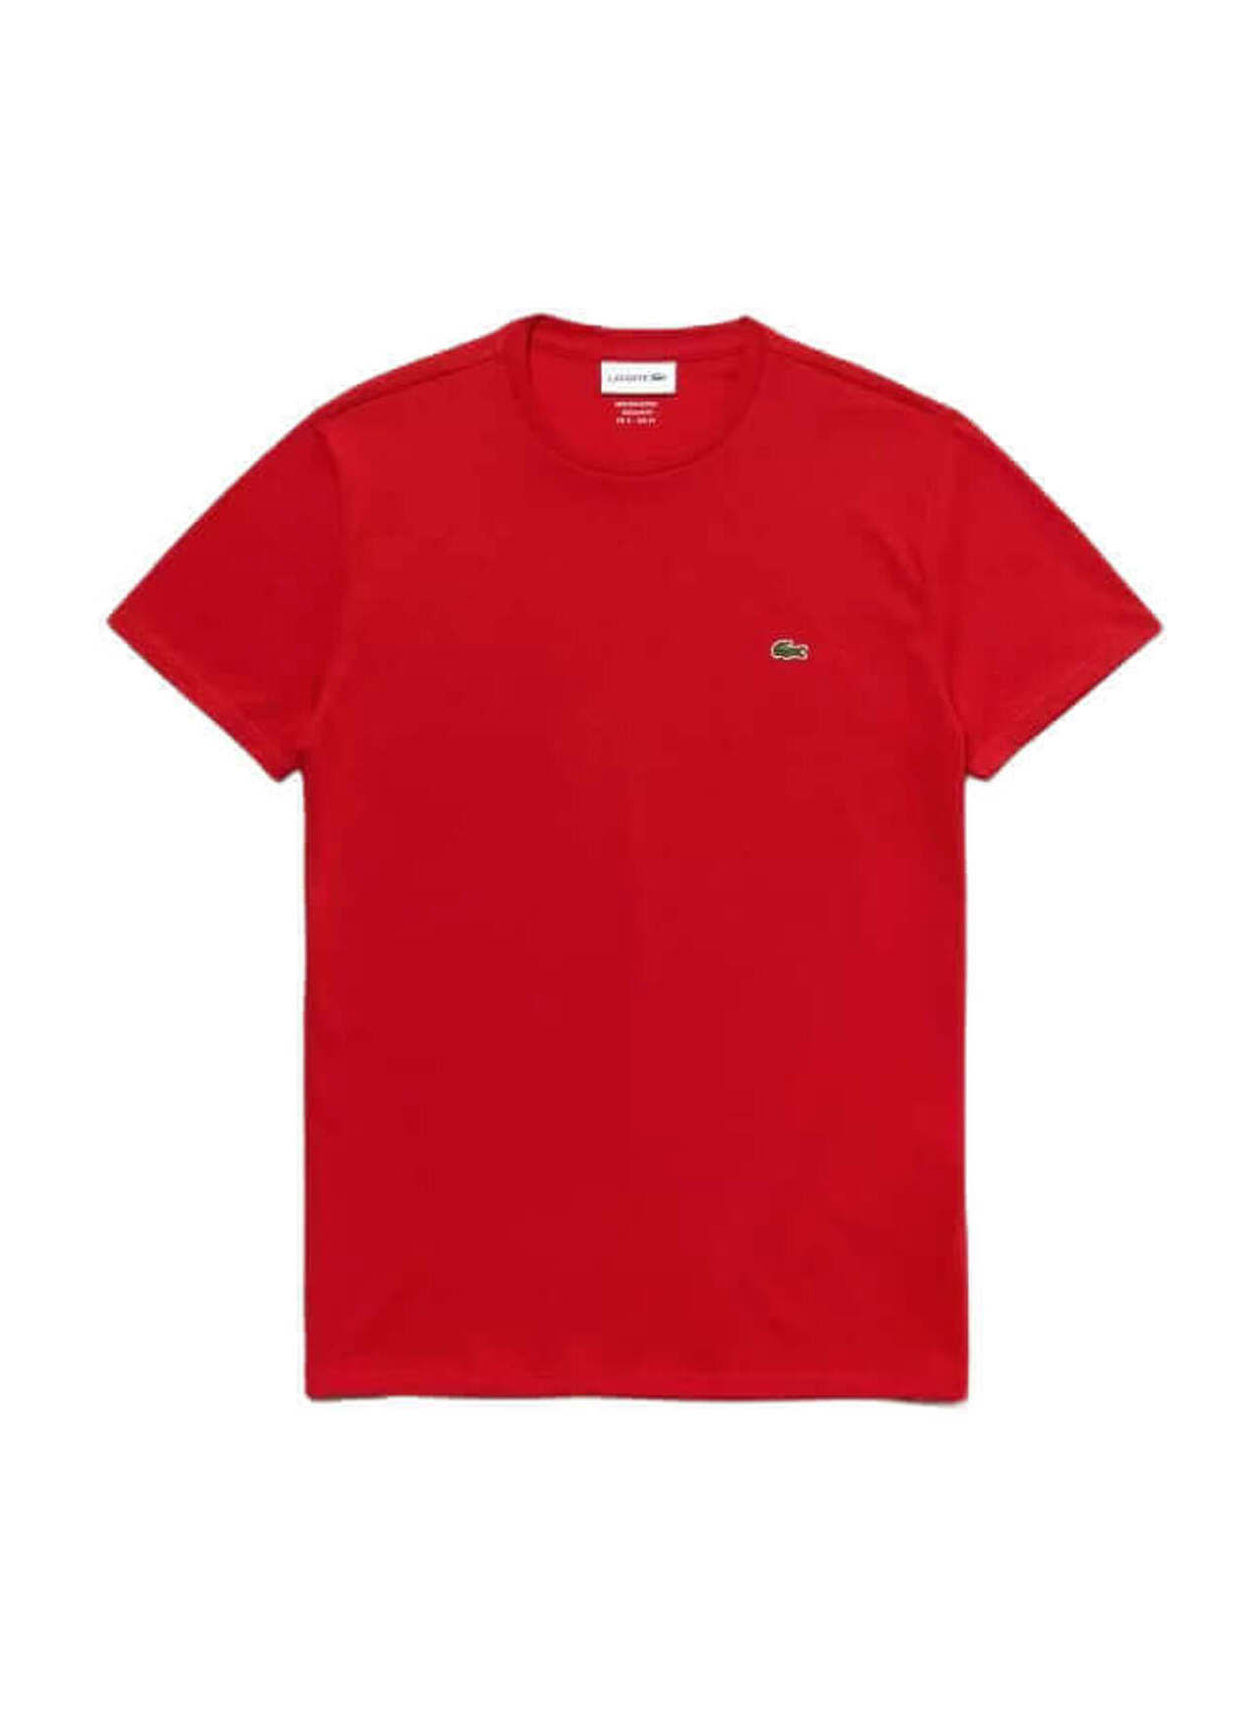 Lacoste Men's Red Crew Neck Pima Cotton T-Shirt